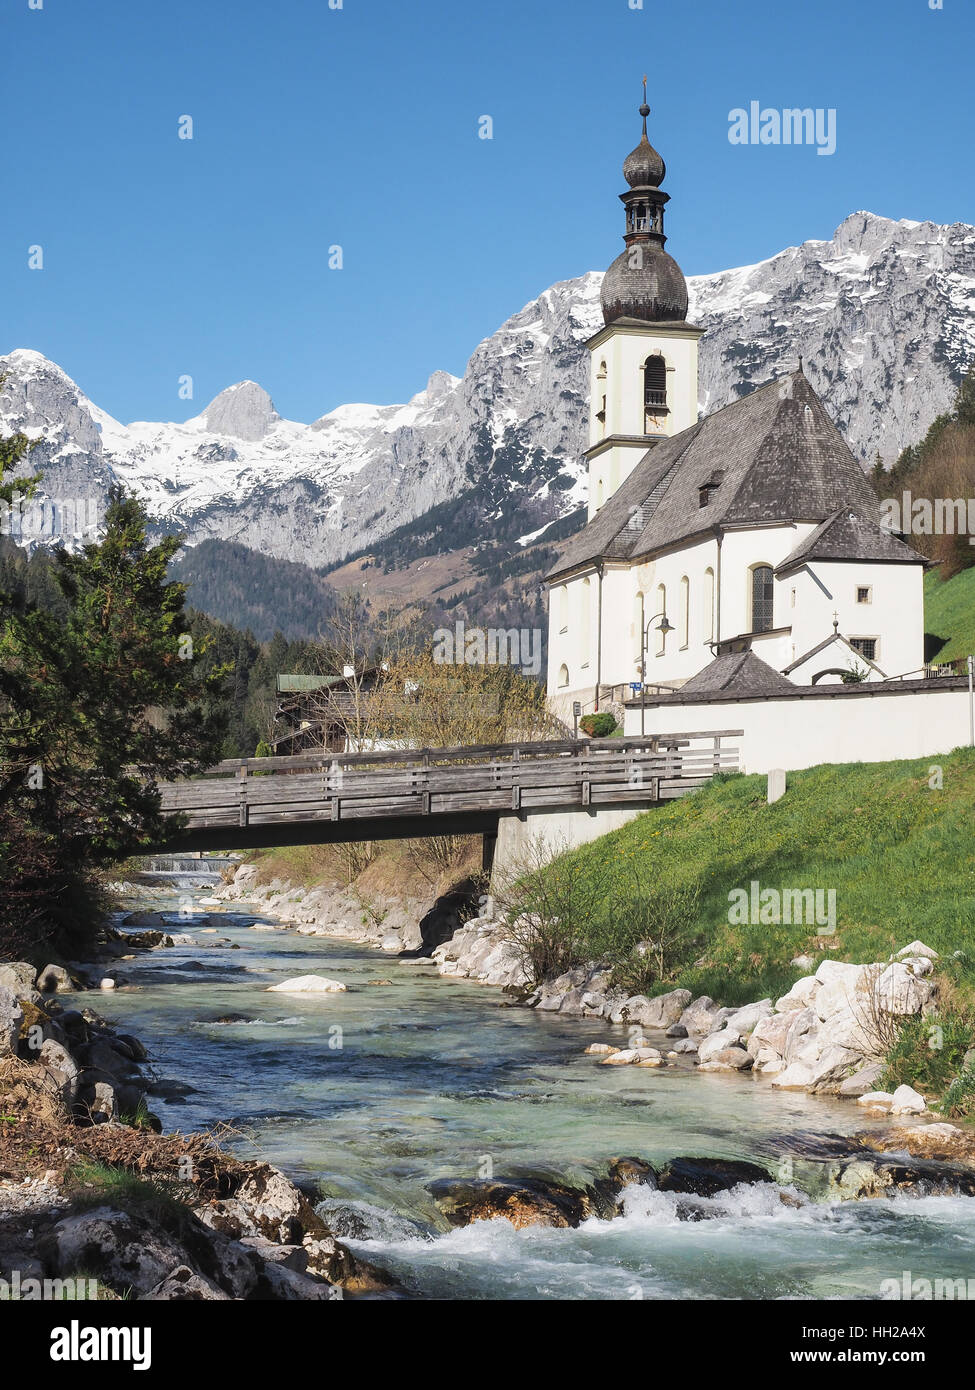 Pfarrkirche St. Sebastian in Ramsau, Bayerische Alpen, Deutschland Stockfoto